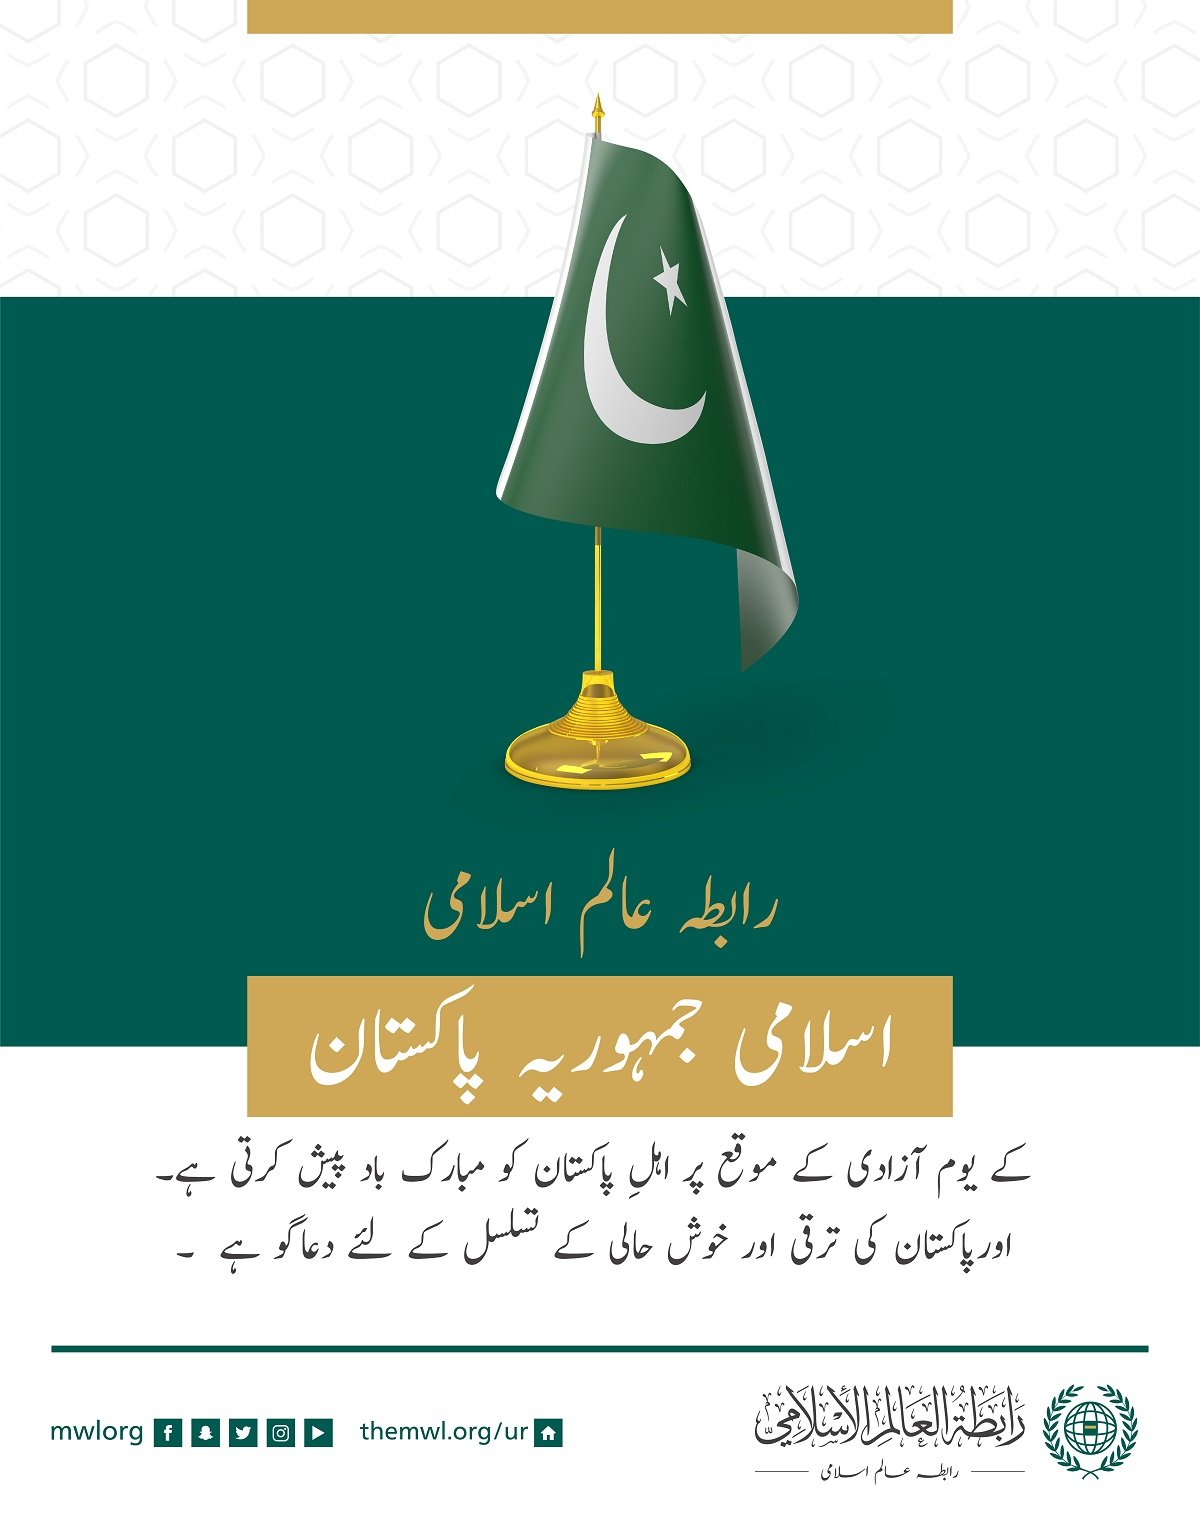 رابطہ عالم اسلامی کی طرف سے اسلامی جمہوریہ پاکستان کے یوم آزادی کے موقع پر مبارک باد کا پیغام: